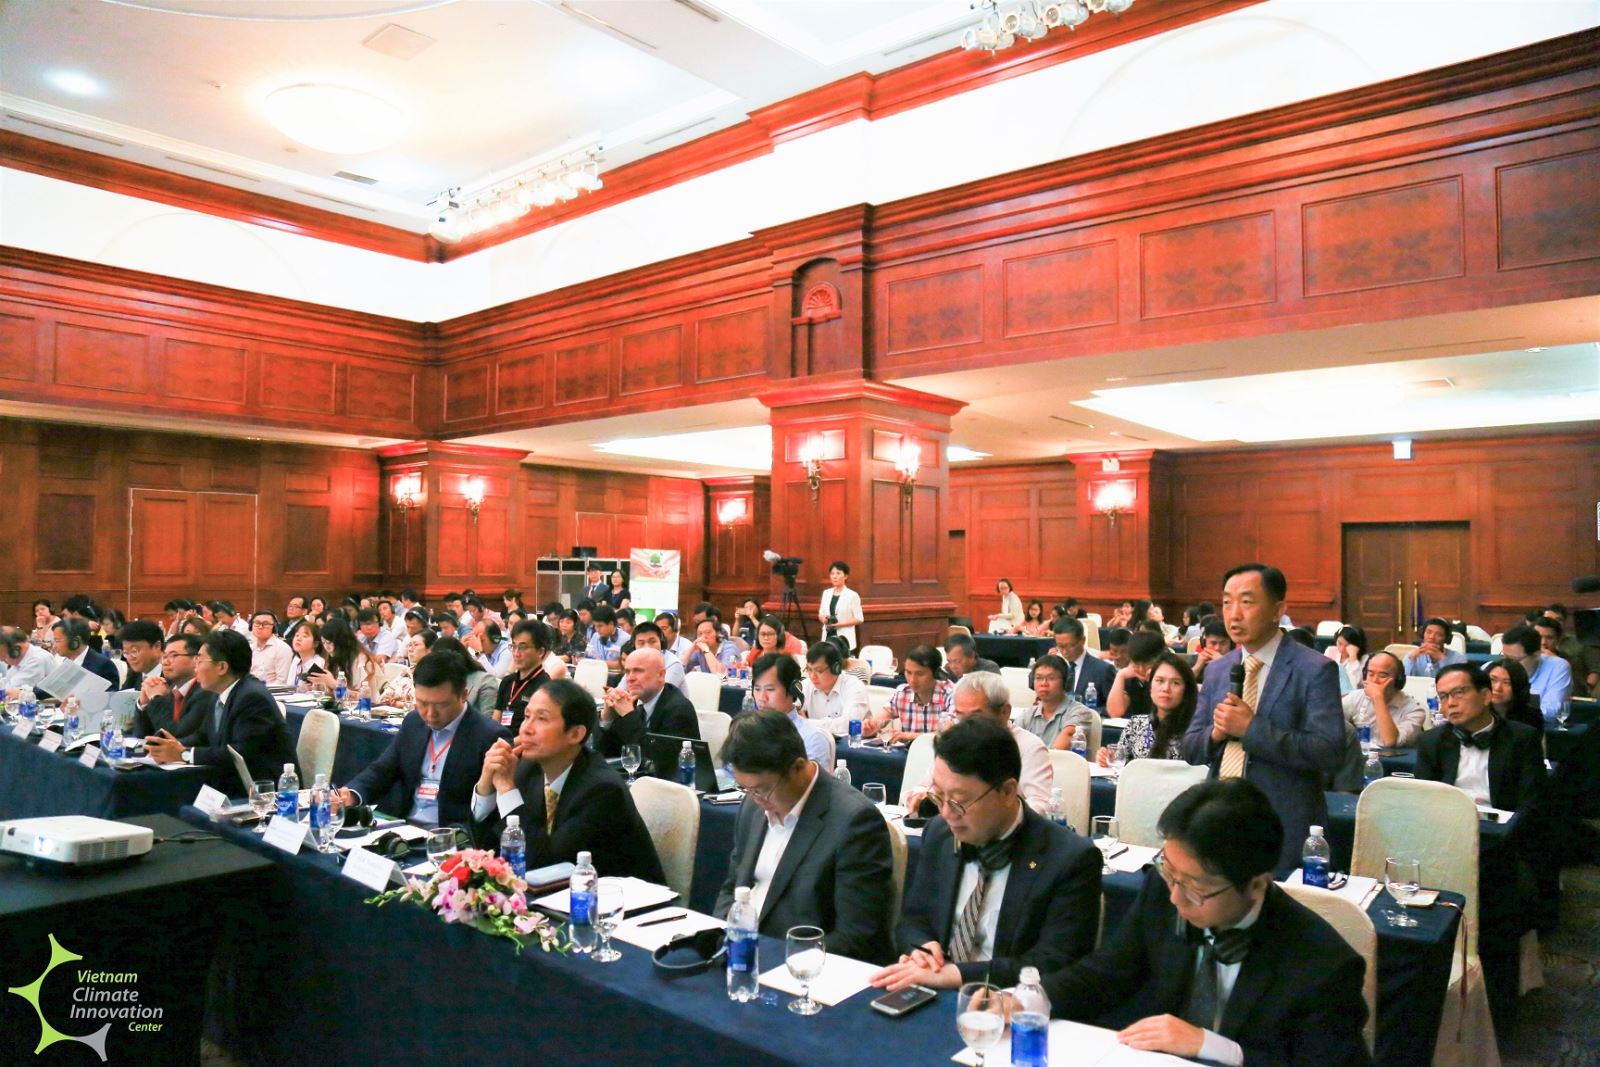 Rất nhiều nhà đầu tư, doanh nghiệp của Hàn Quốc và Việt Nam quan tâm đến sự ra đời của Quỹ đầu tư mạo hiểm Việt - Hàn tại Hội thảo “Hợp tác xây dựng hệ sinh thái khởi nghiệp Việt Nam - Hàn Quốc”